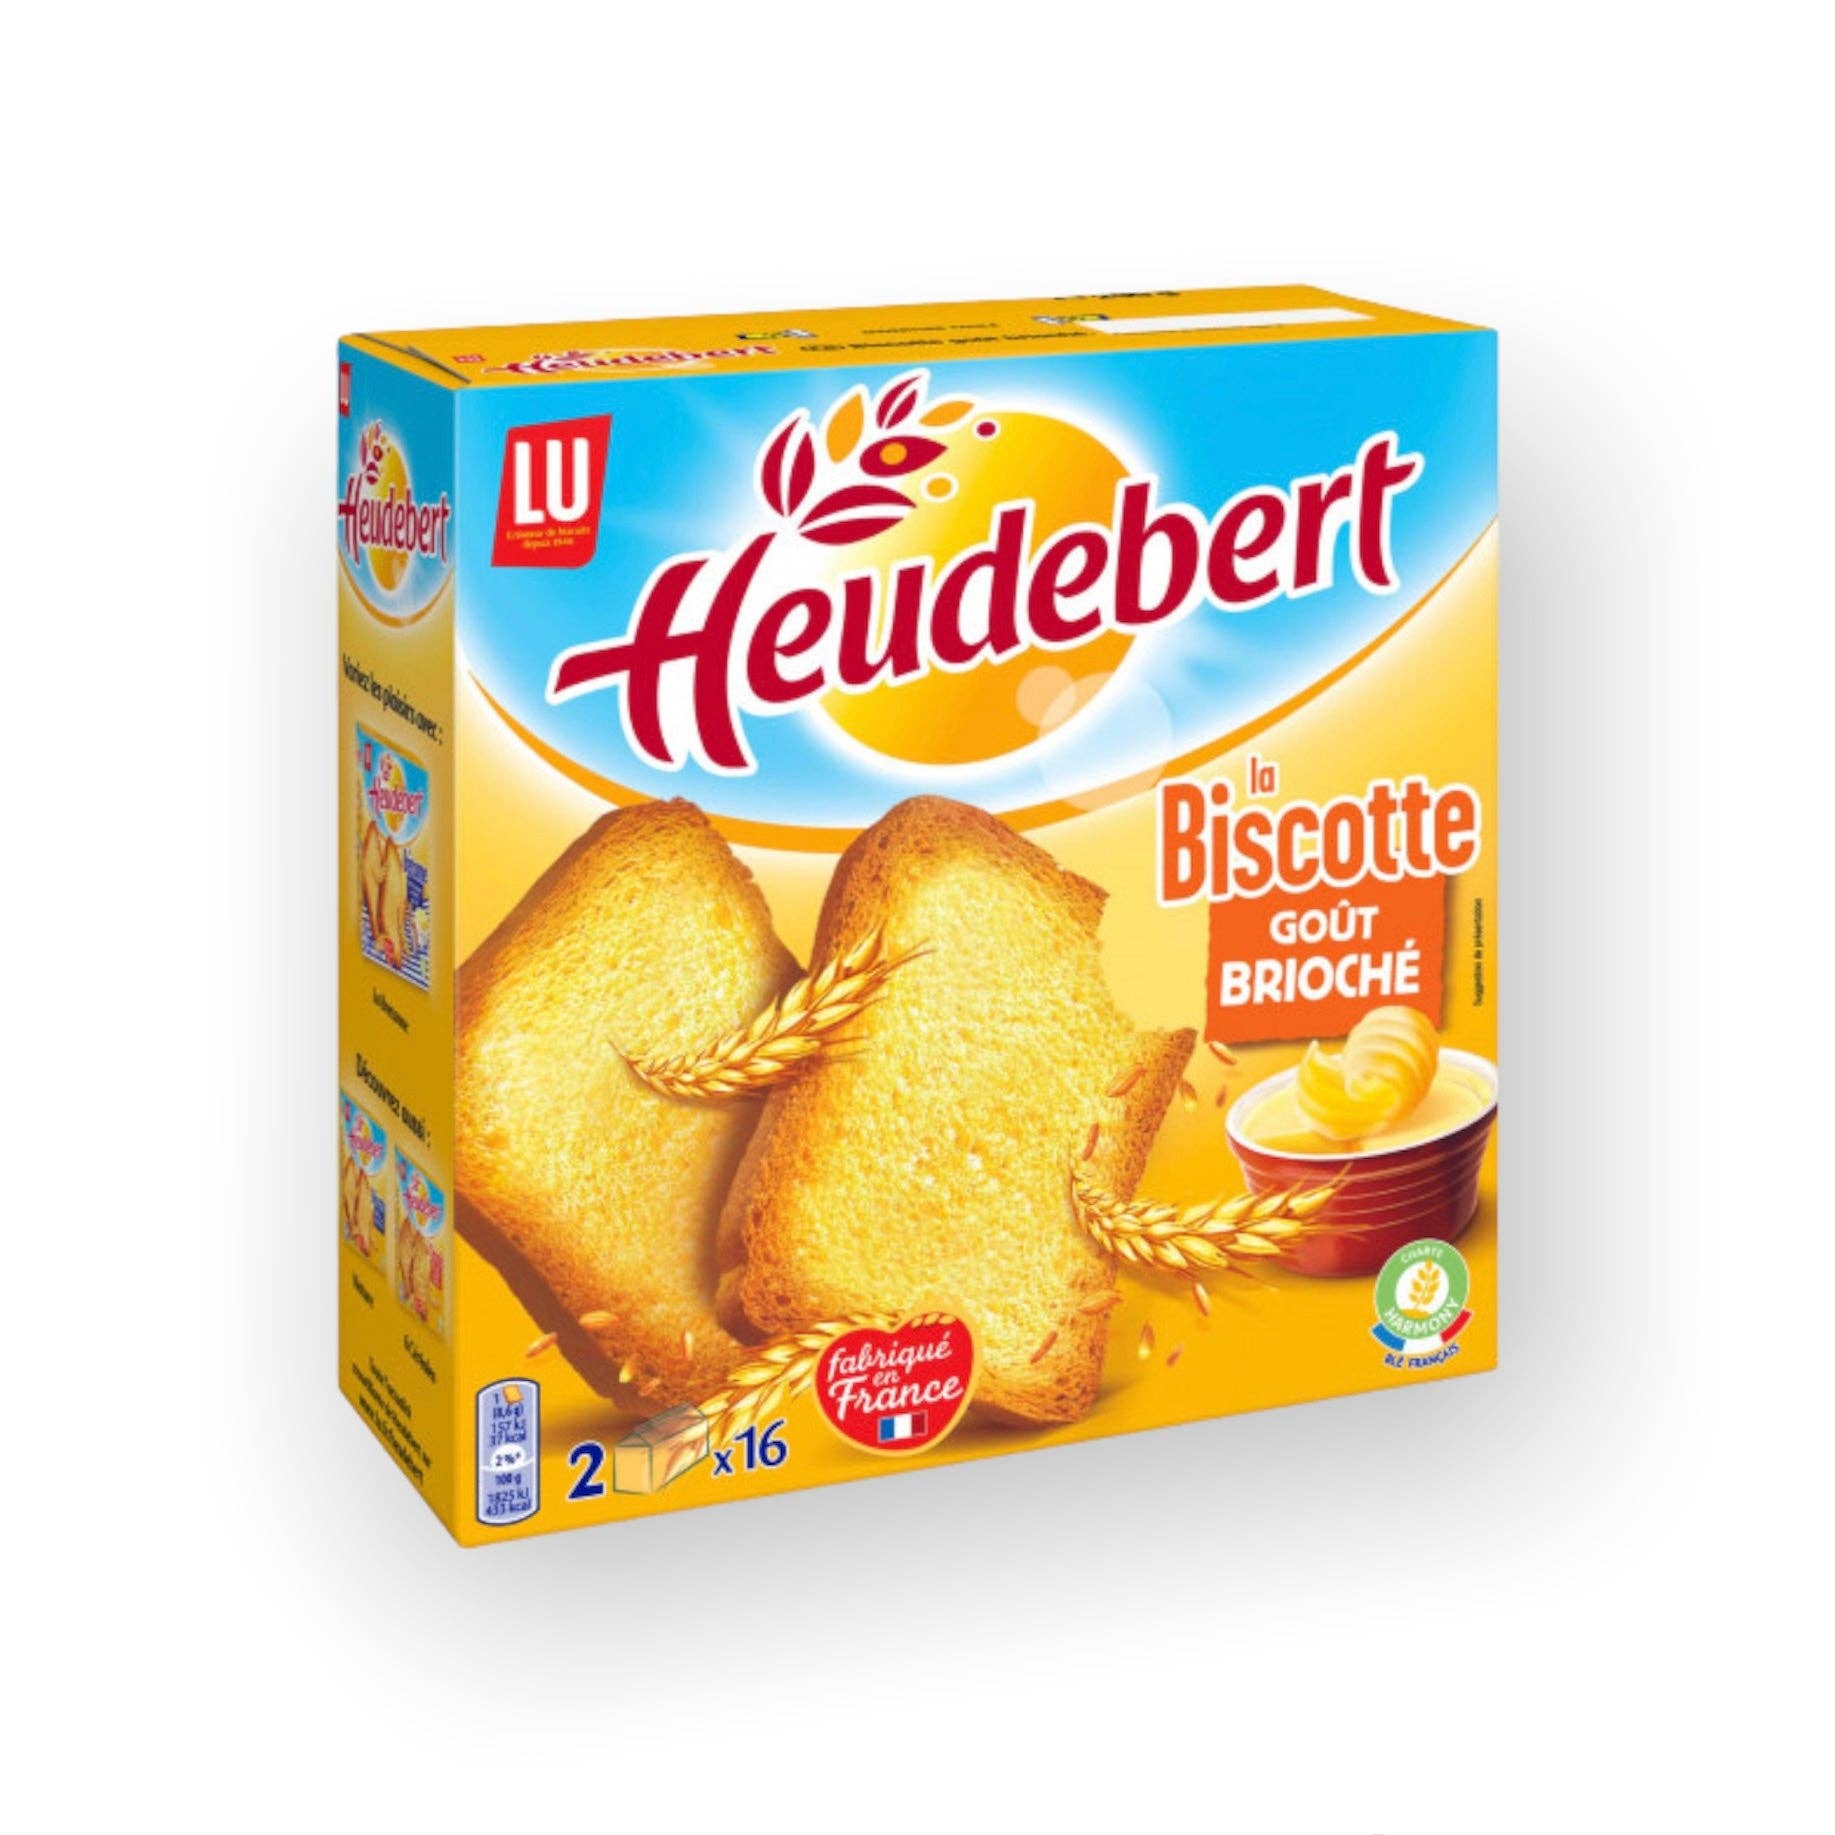 Lu - Heudebert Biscottes, 290g (10.2 oz) - 290 g